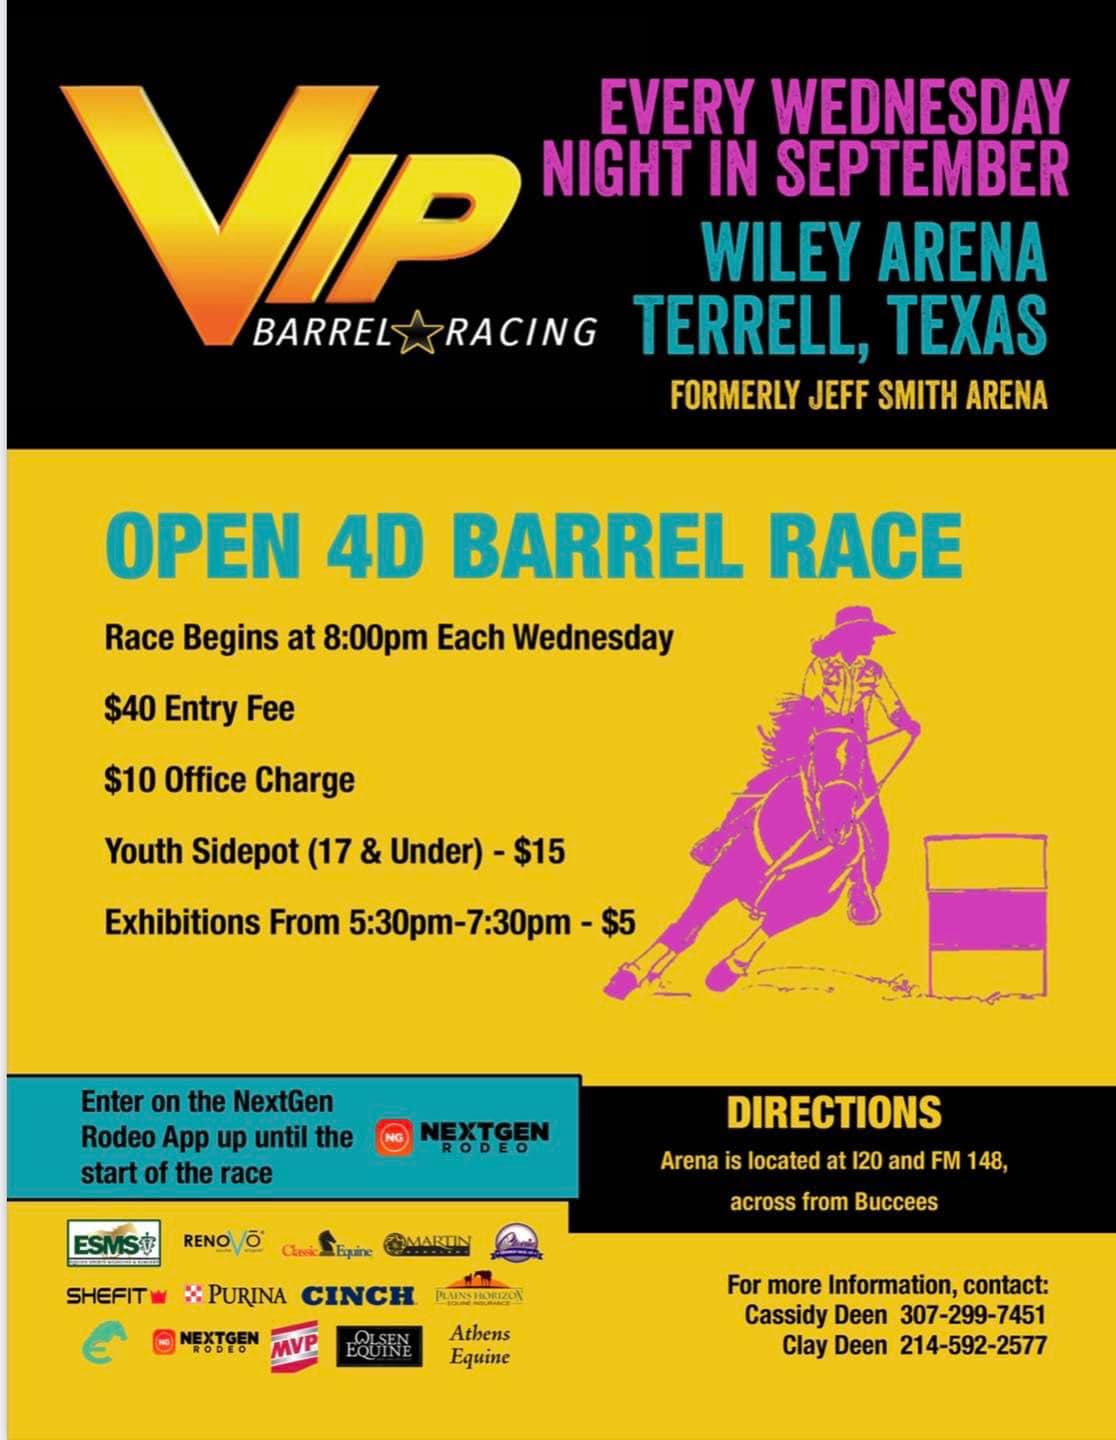 VIP Barrel Racing